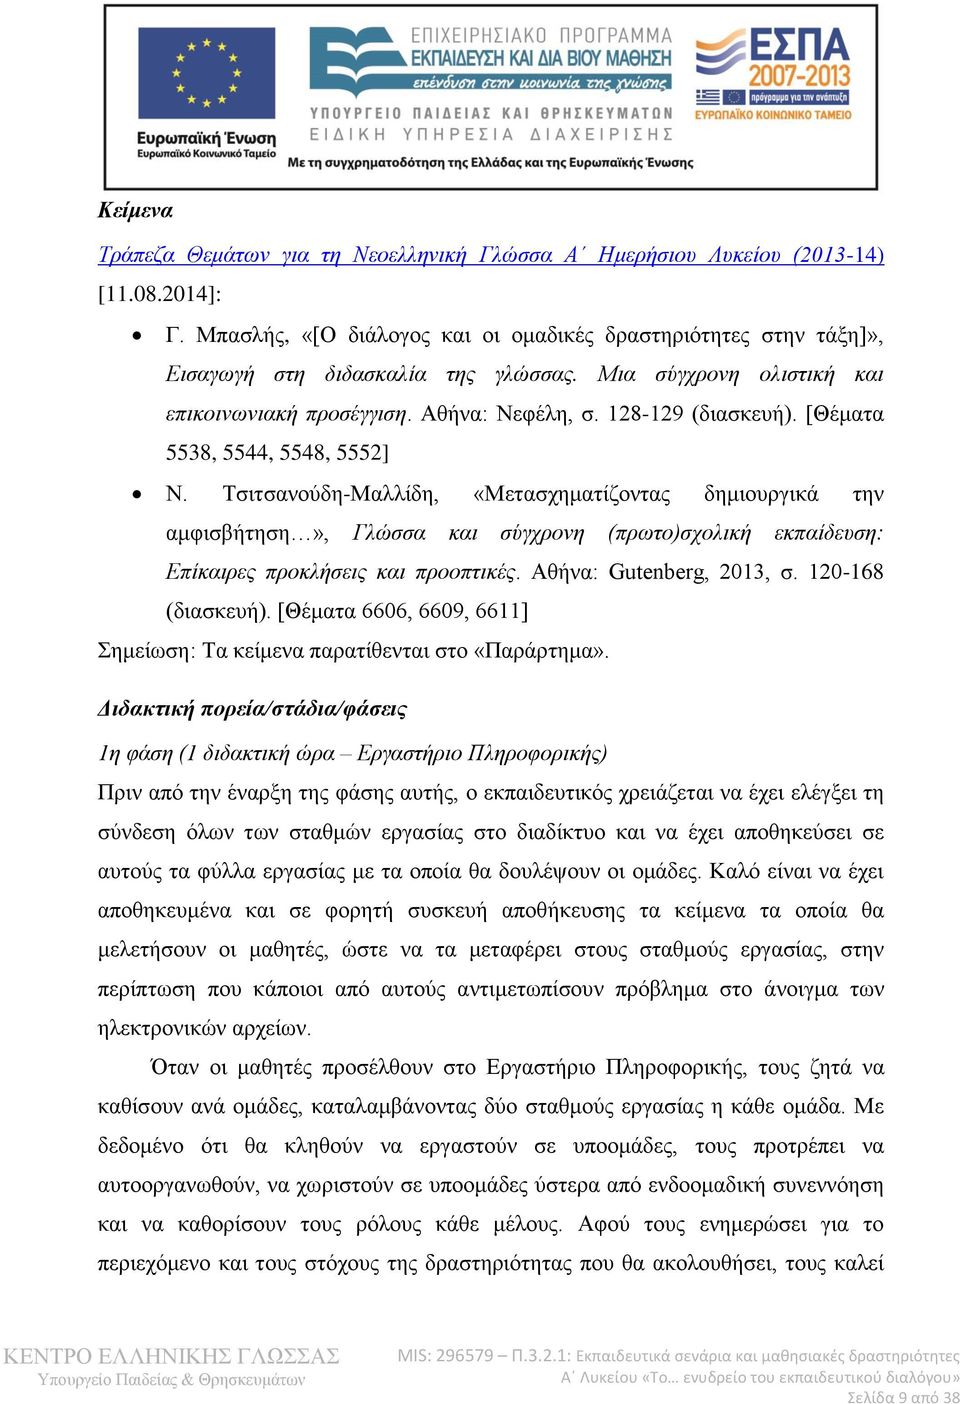 Τσιτσανούδη-Μαλλίδη, «Μετασχηματίζοντας δημιουργικά την αμφισβήτηση», Γλώσσα και σύγχρονη (πρωτο)σχολική εκπαίδευση: Επίκαιρες προκλήσεις και προοπτικές. Αθήνα: Gutenberg, 2013, σ. 120-168 (διασκευή).